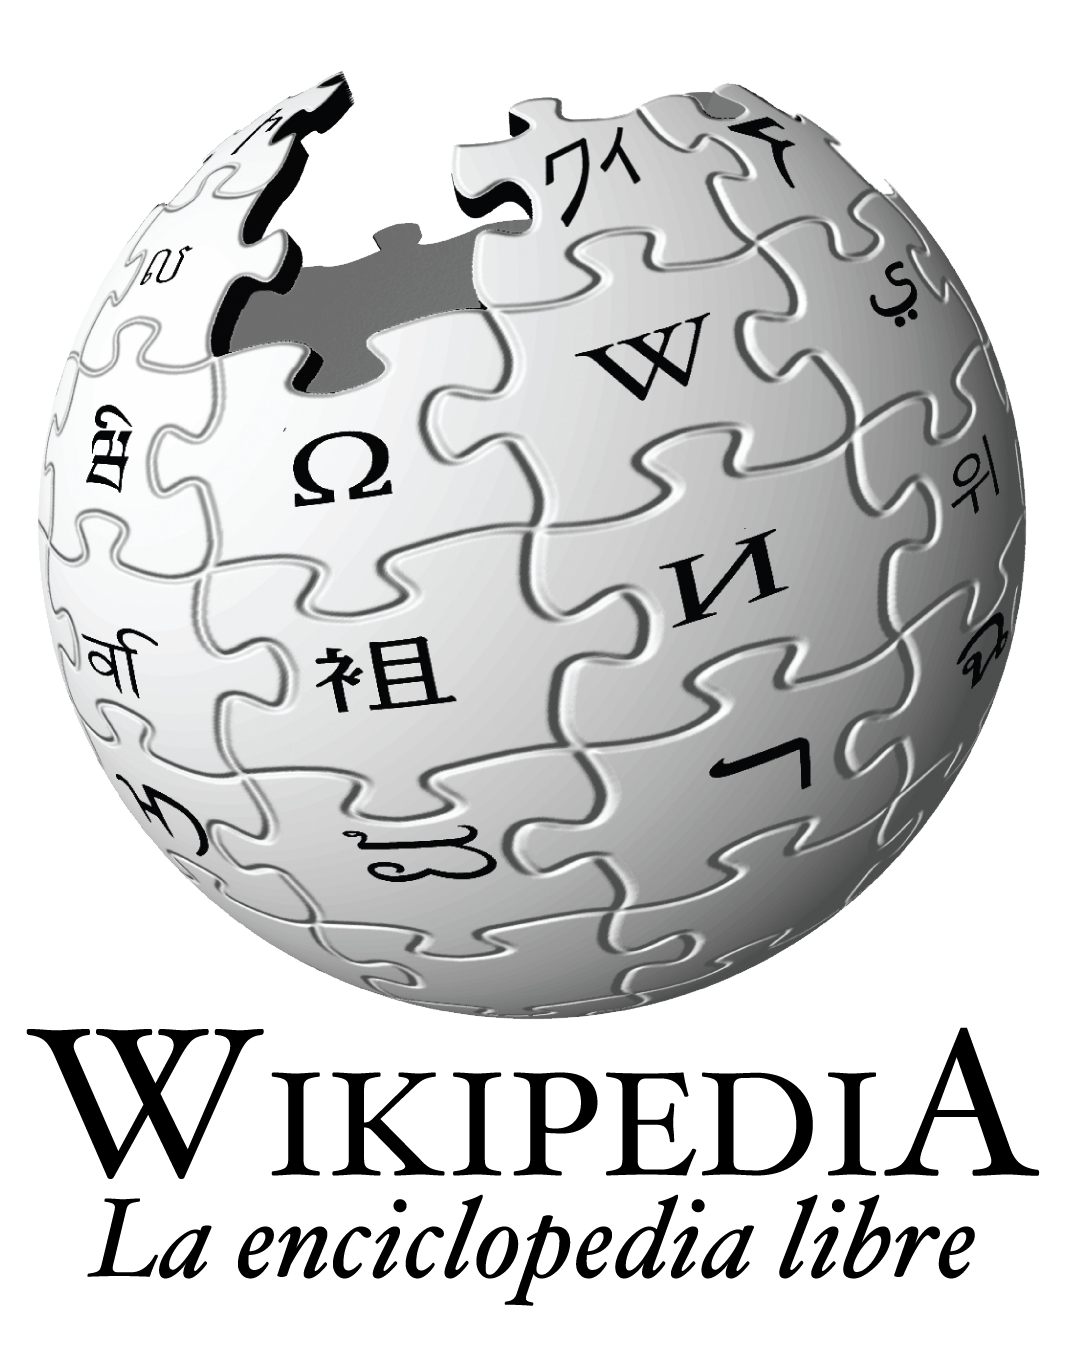 日文維基百科